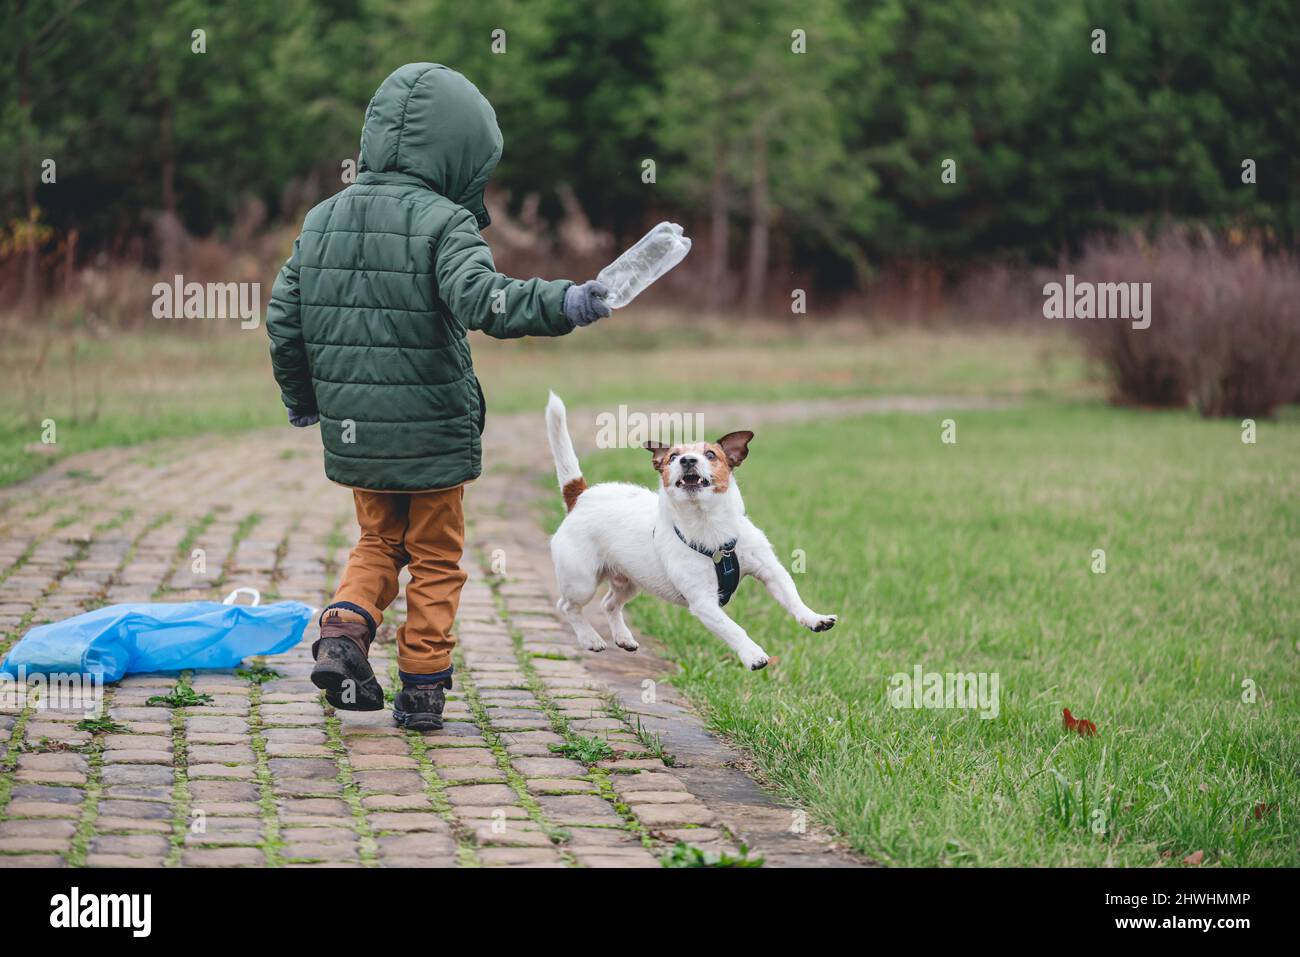 Il bambino gioca con il cane mentre raccoglie i rifiuti di plastica nel parco. La famiglia aggiunge divertimento al lavoro volontario Foto Stock